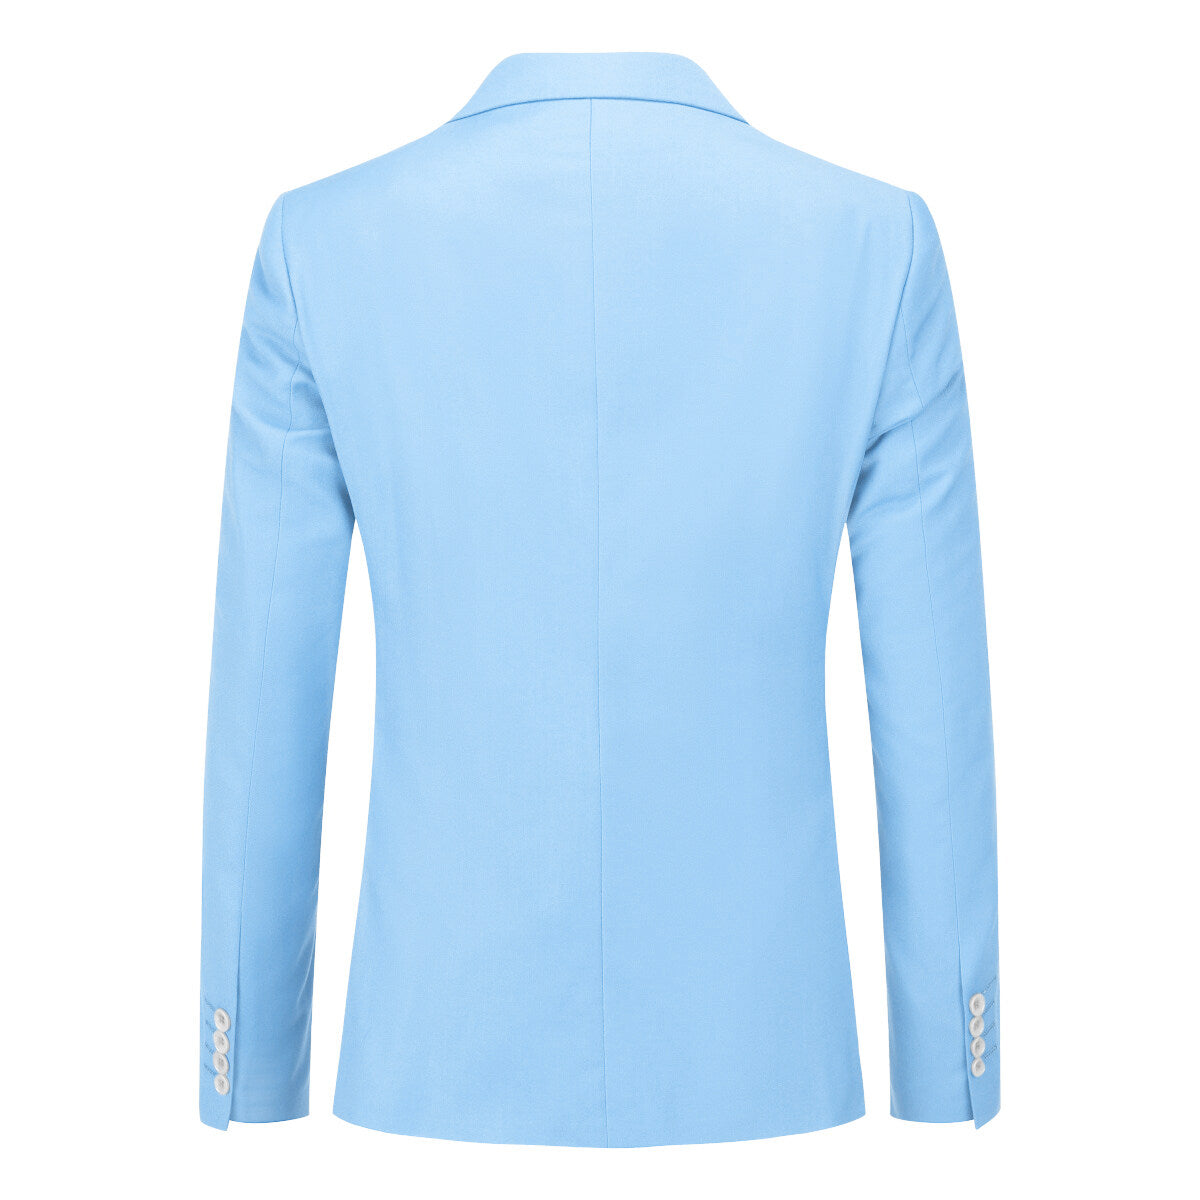 Light Blue 3-Piece Slim Fit Classic Suit